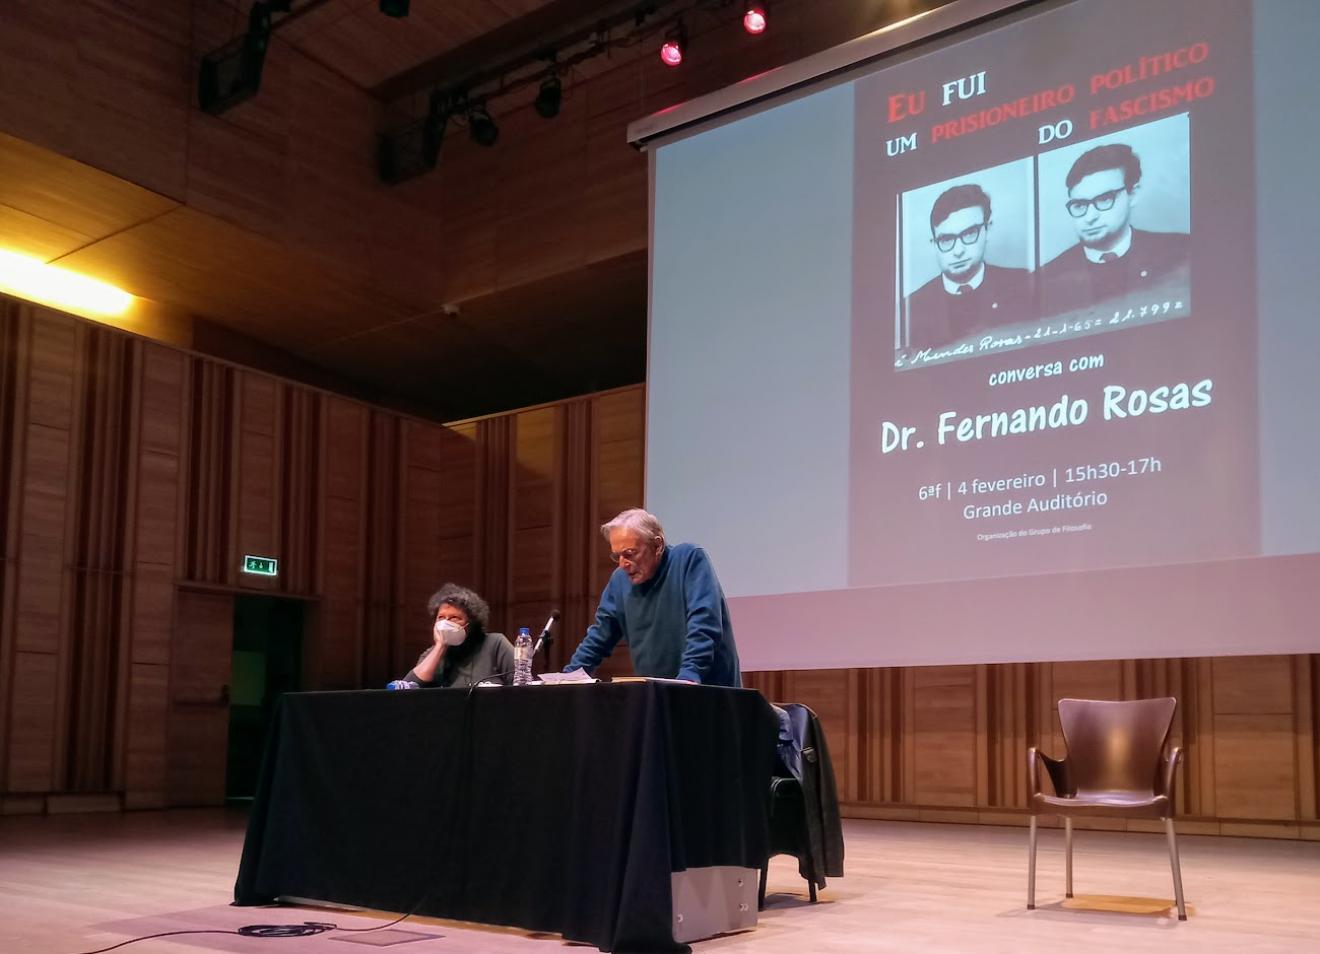 Debate de Abril com Fernando Rosas: Eu fui um prisioneiro político do fascismo